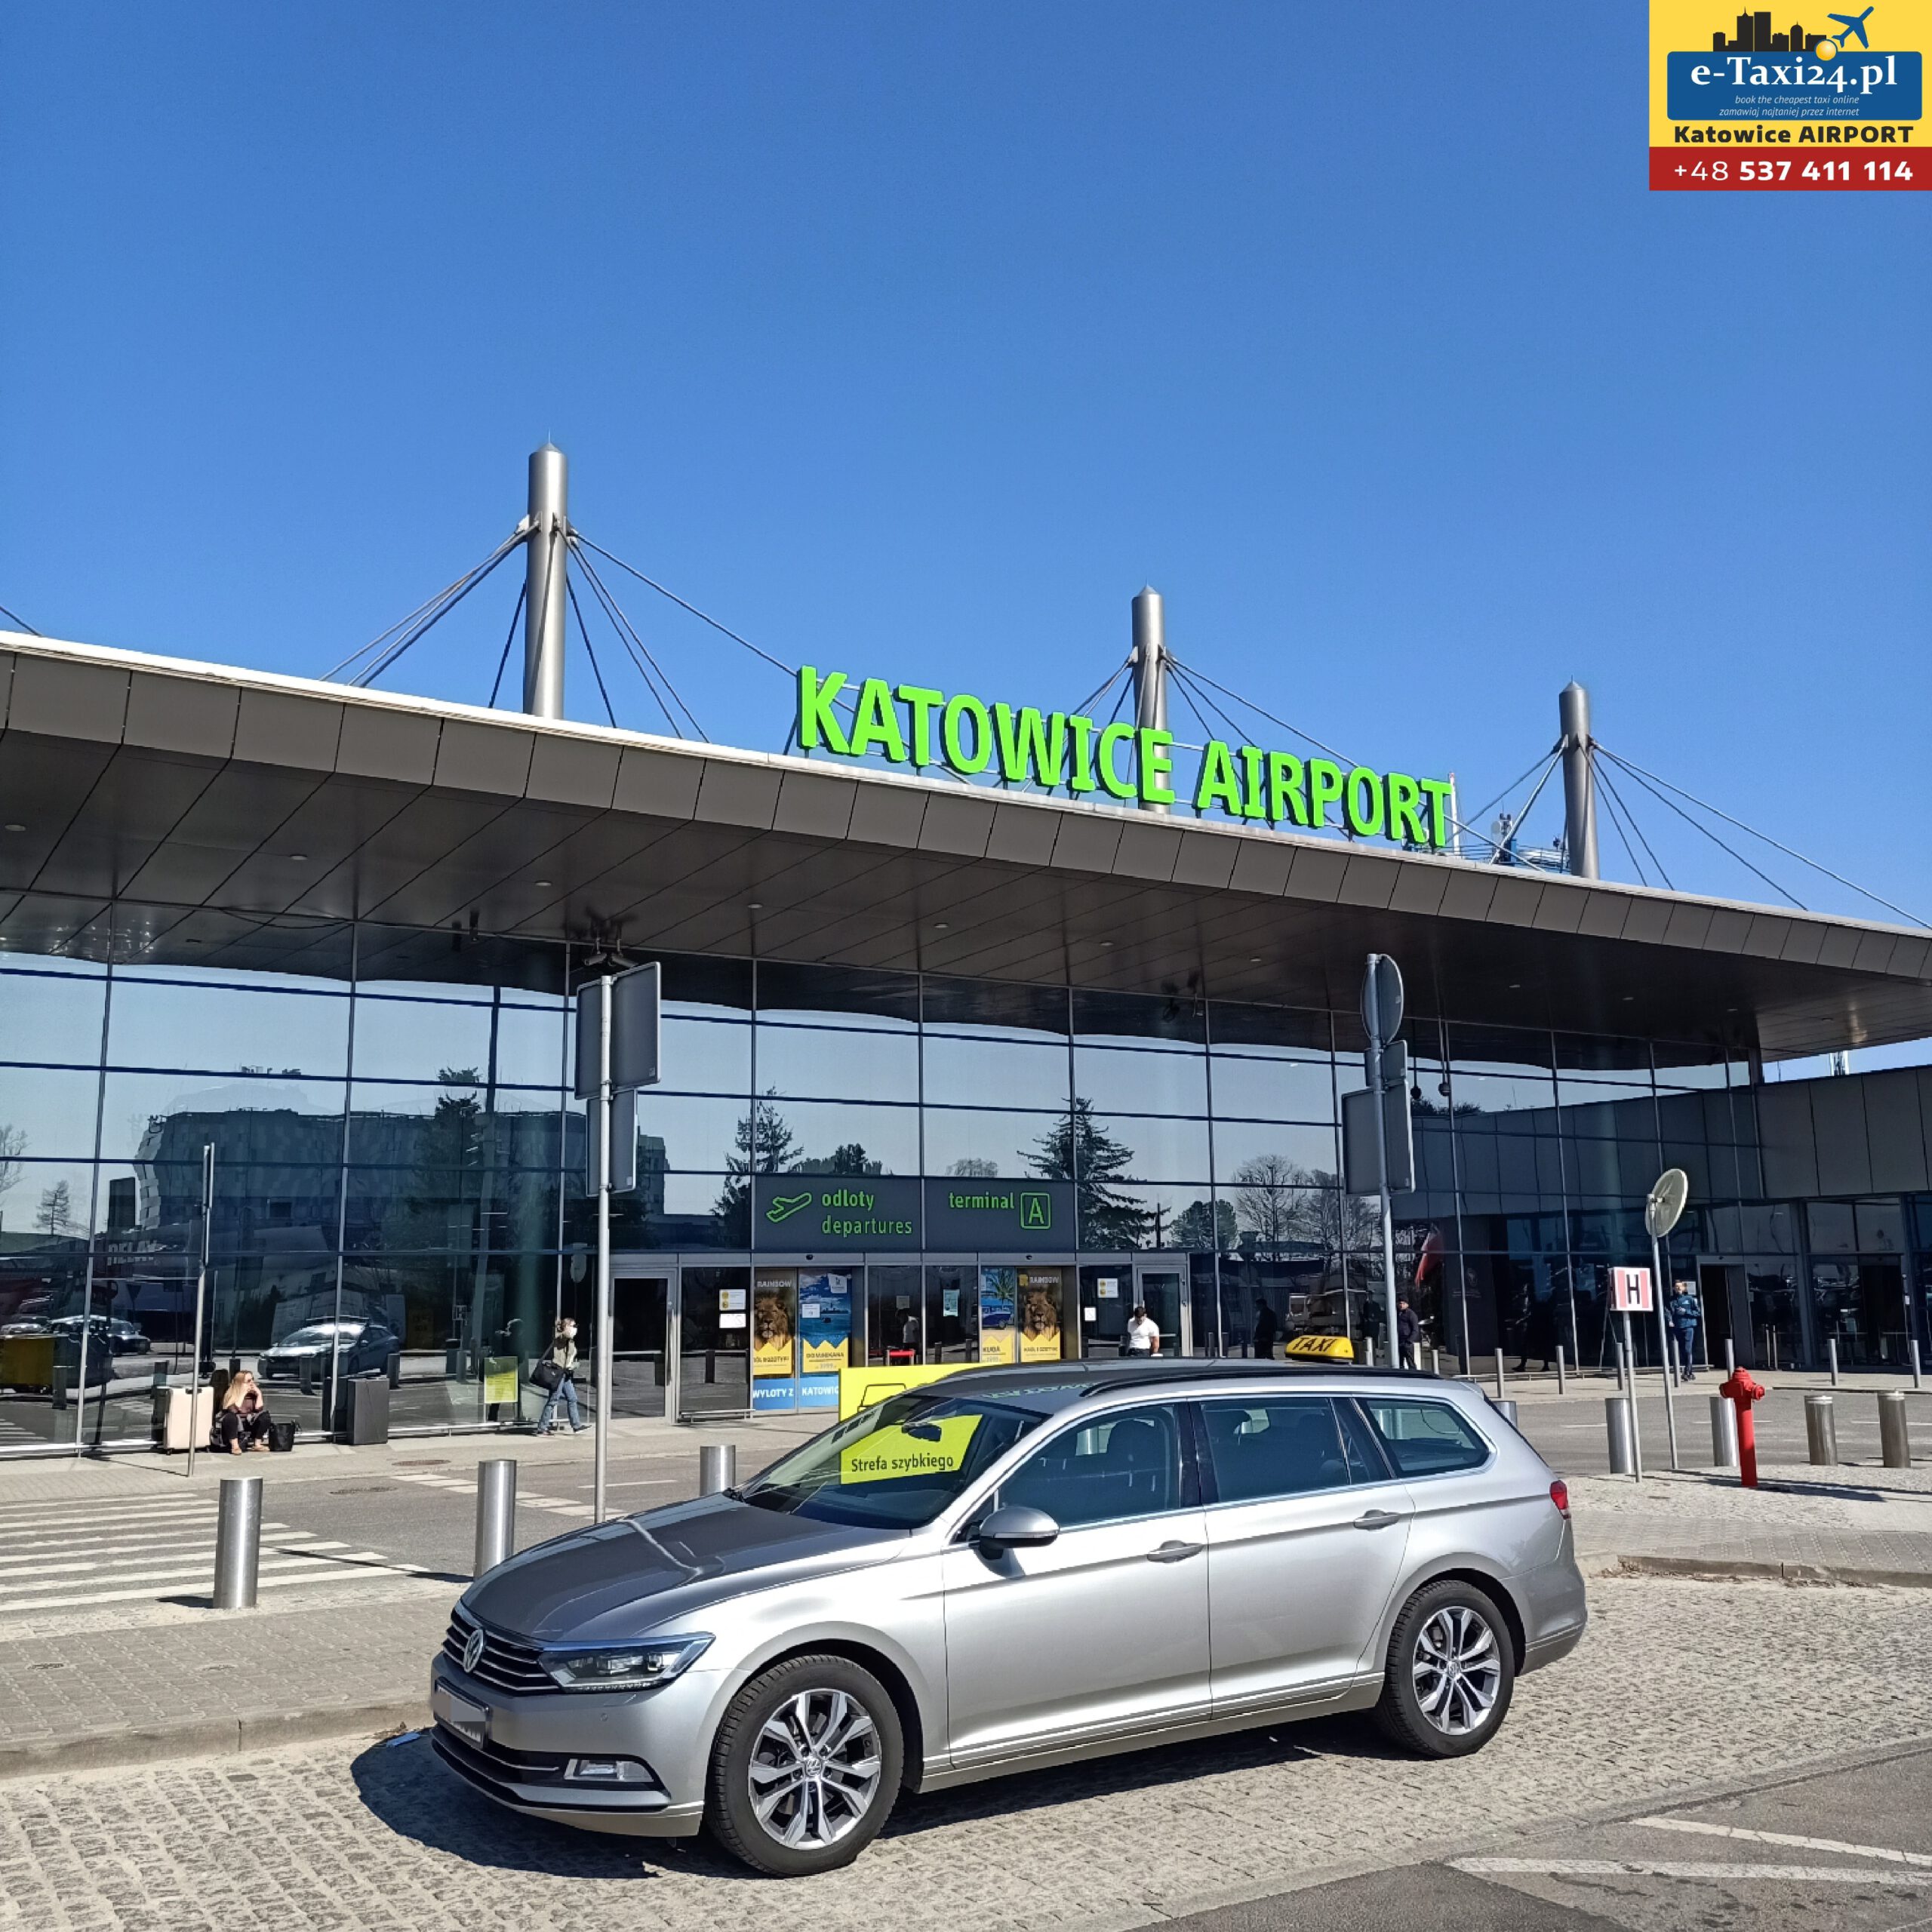 Taxi Airport Katowice - CZ 3